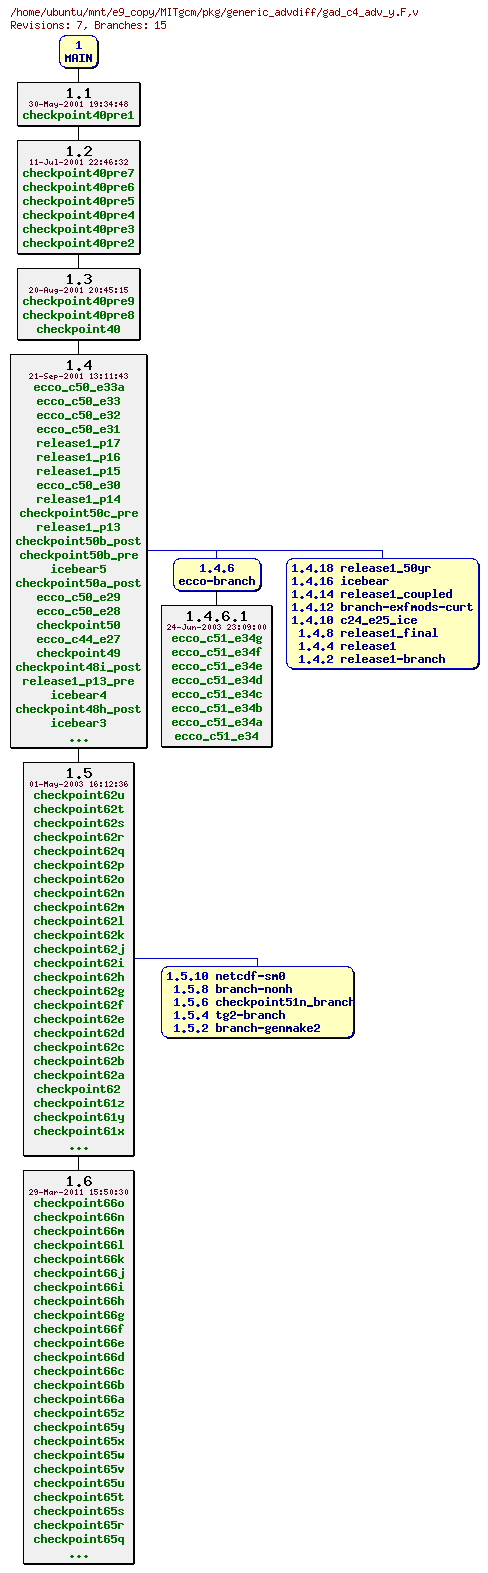 Revisions of MITgcm/pkg/generic_advdiff/gad_c4_adv_y.F